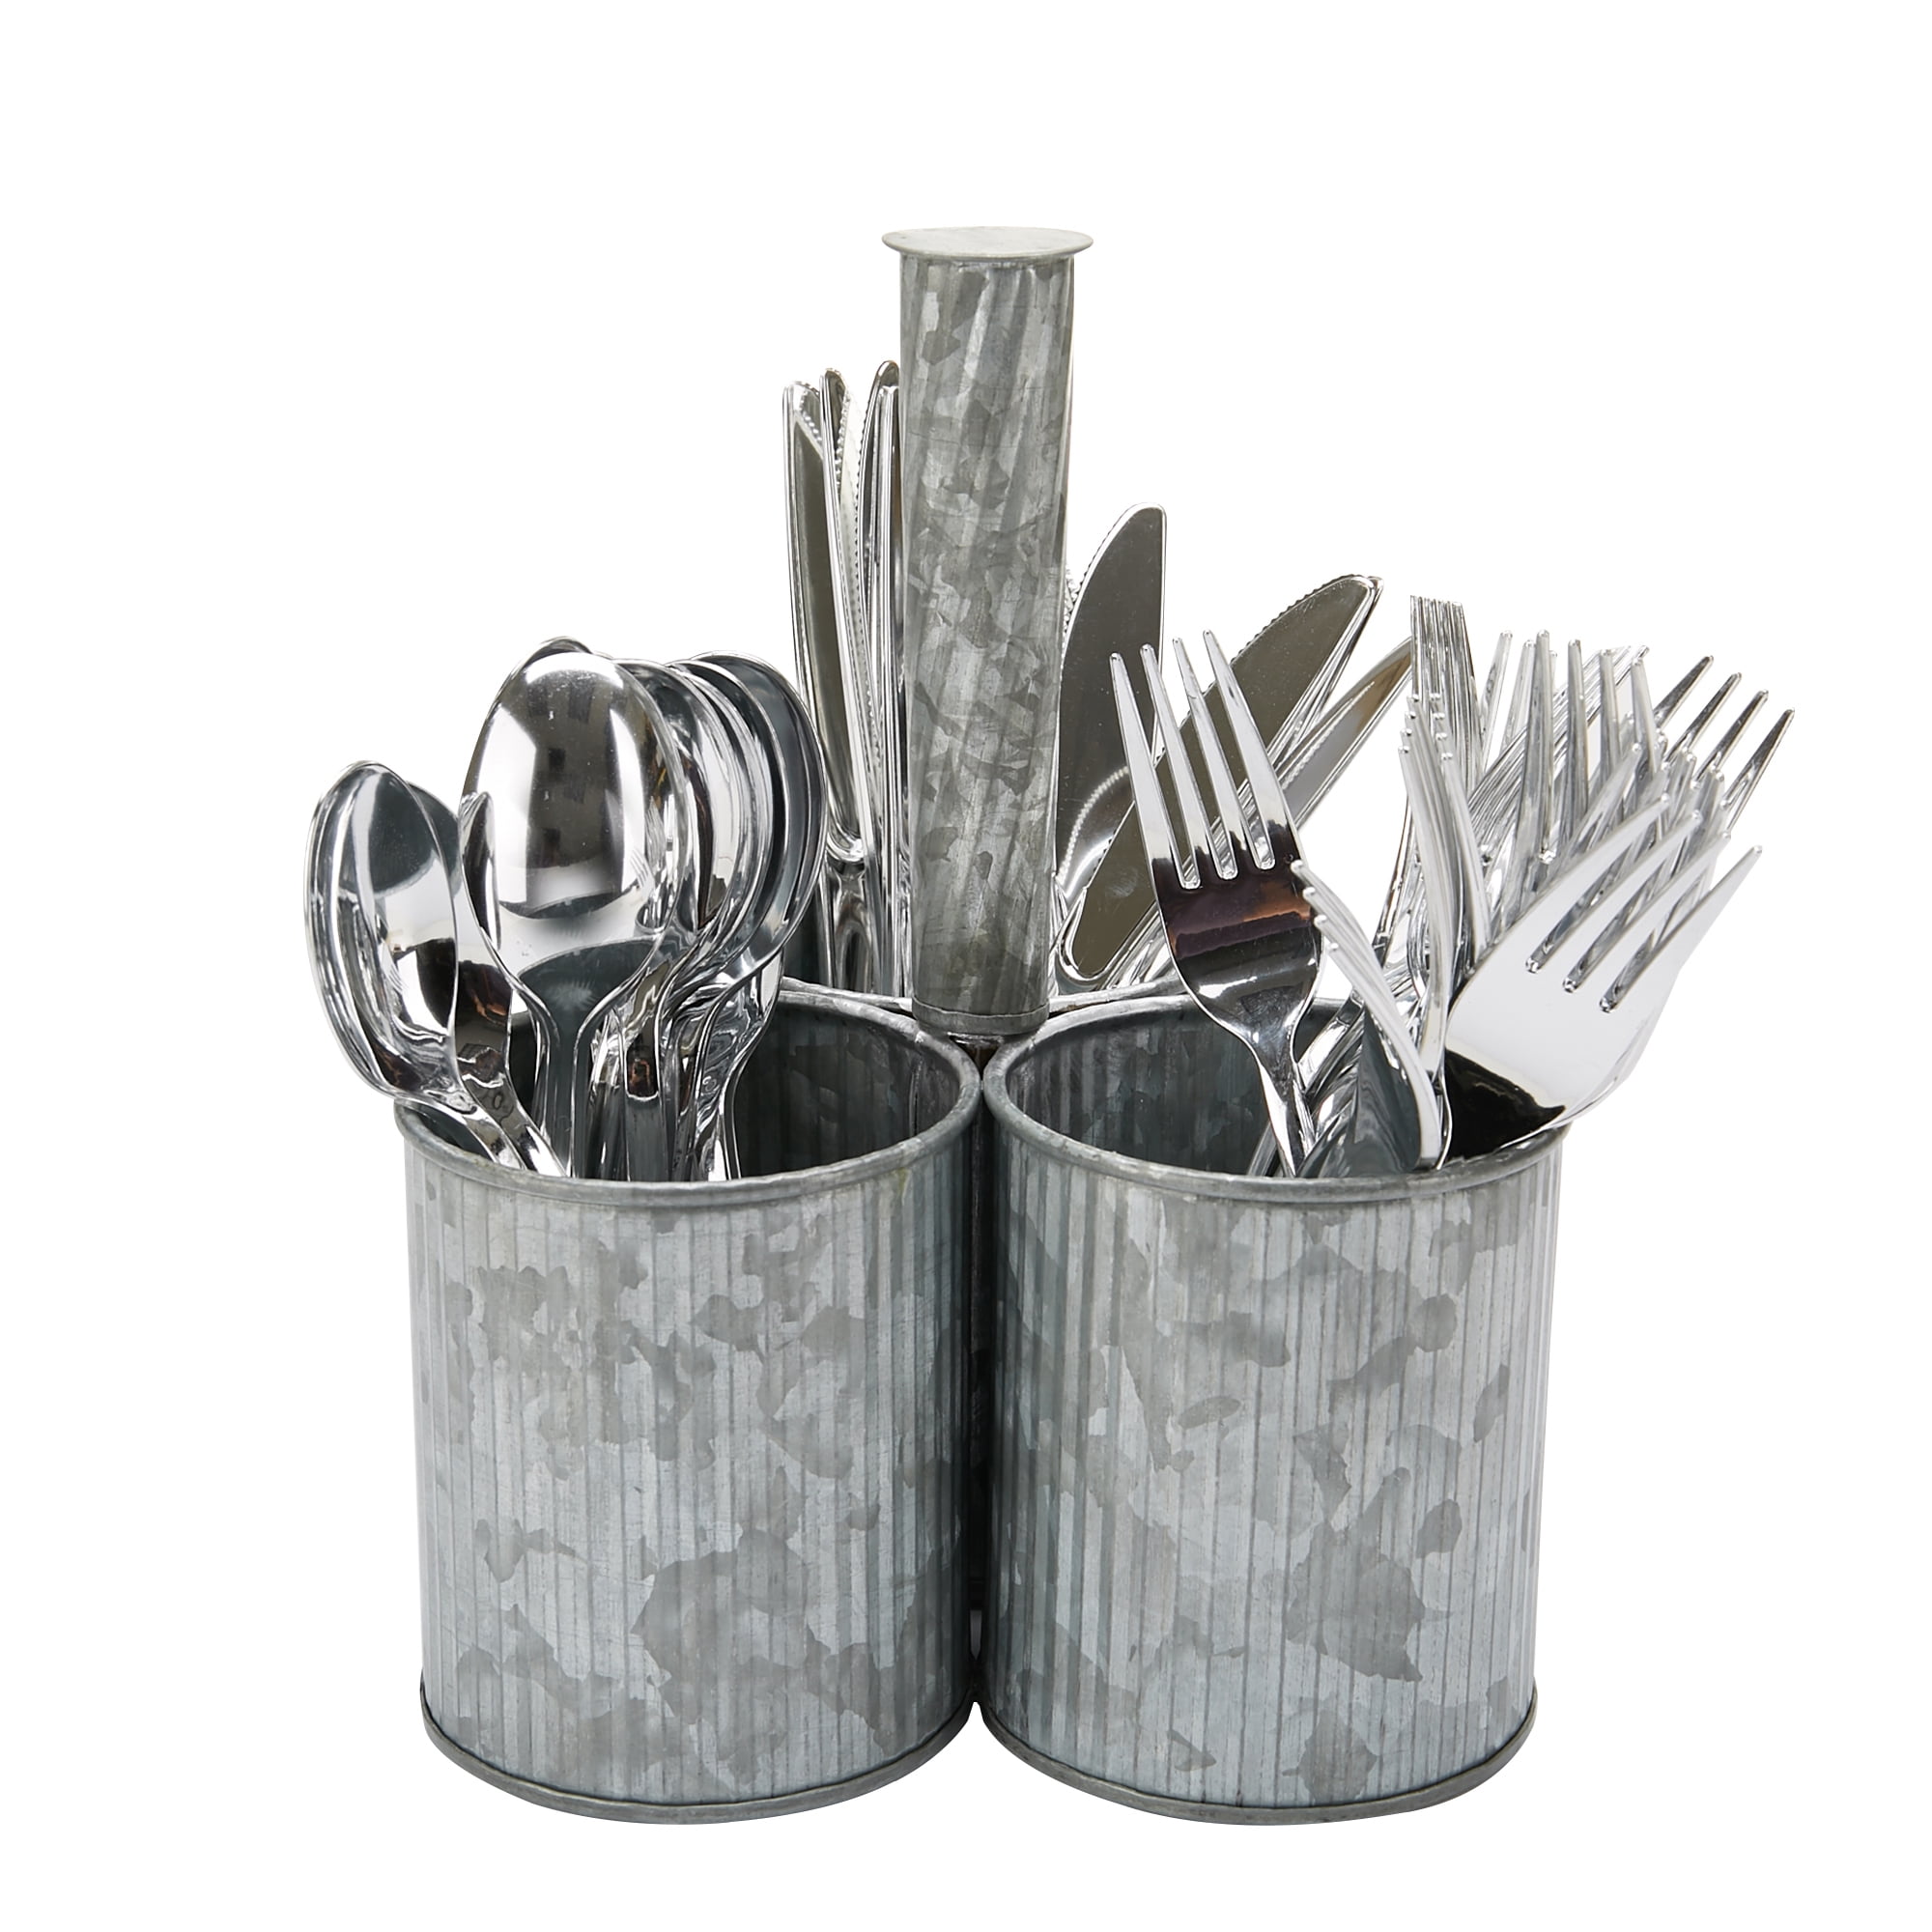 6 x Galvanised Metal Serving Buckets/Cutlery Caddies 